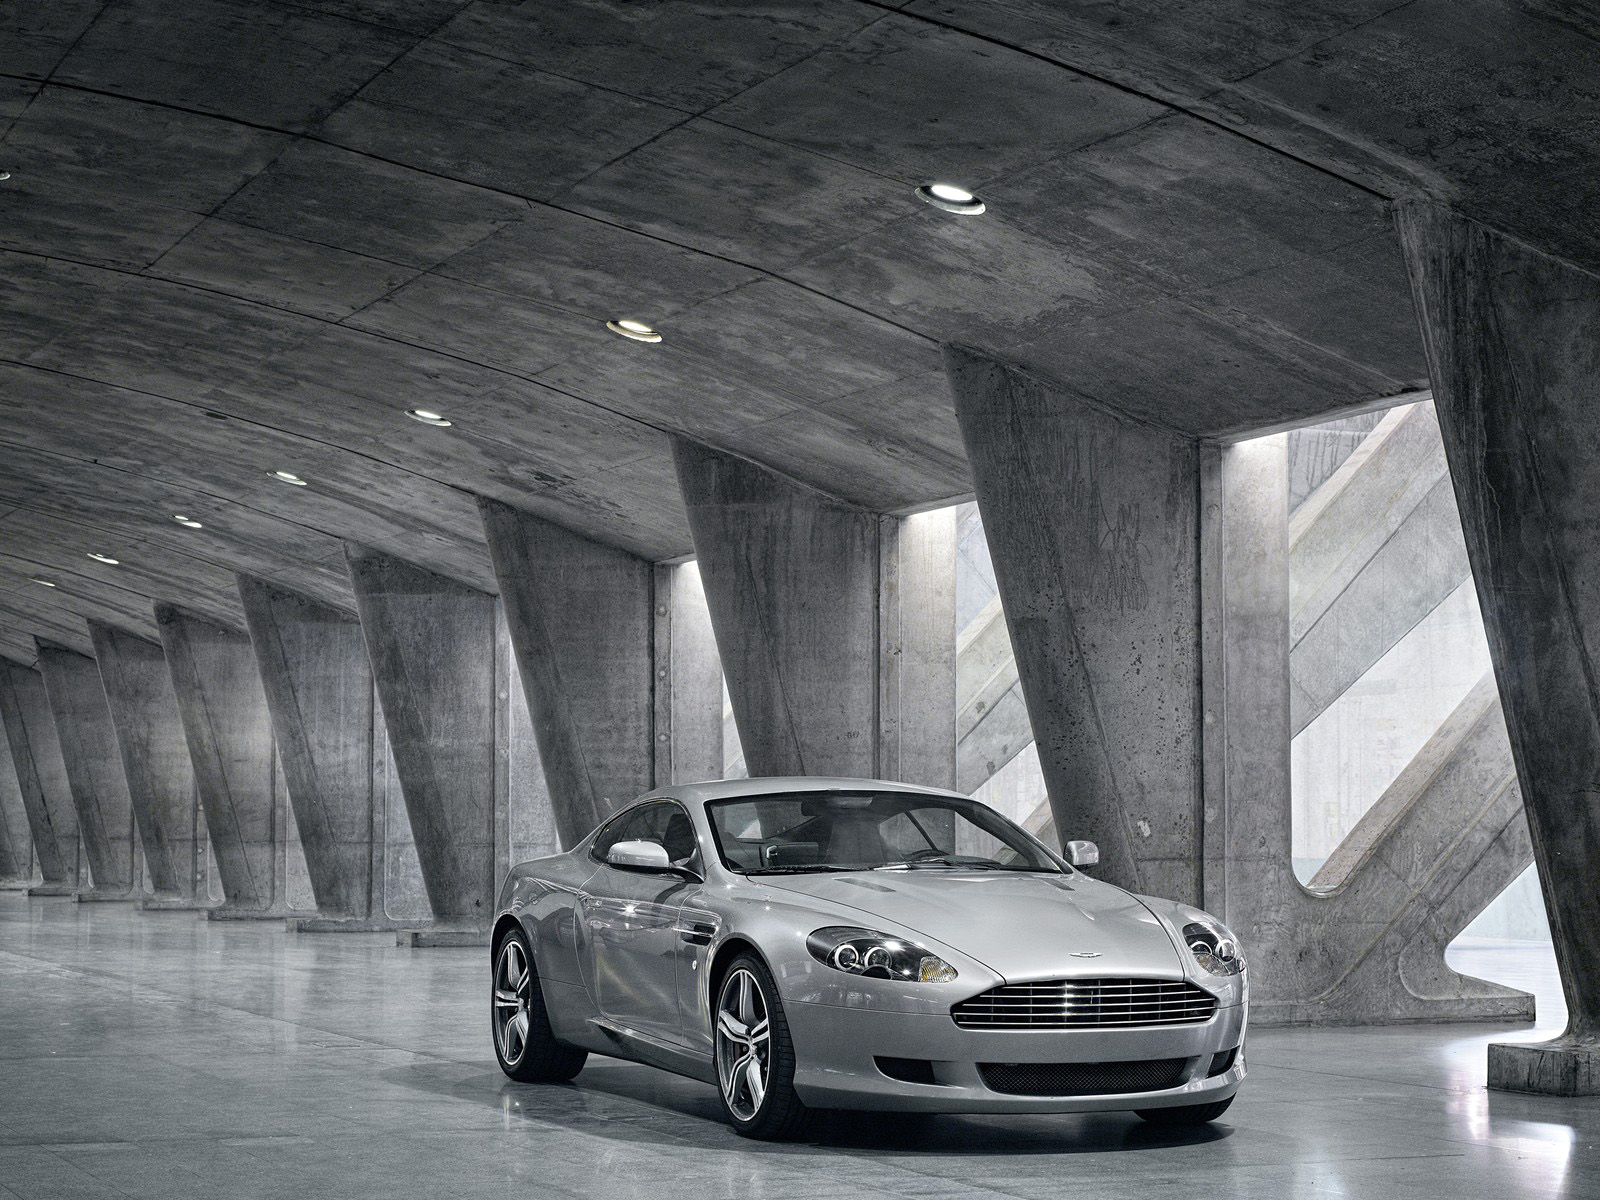 Descarga gratuita de fondo de pantalla para móvil de Aston Martin Db9, Aston Martin, Vehículos.